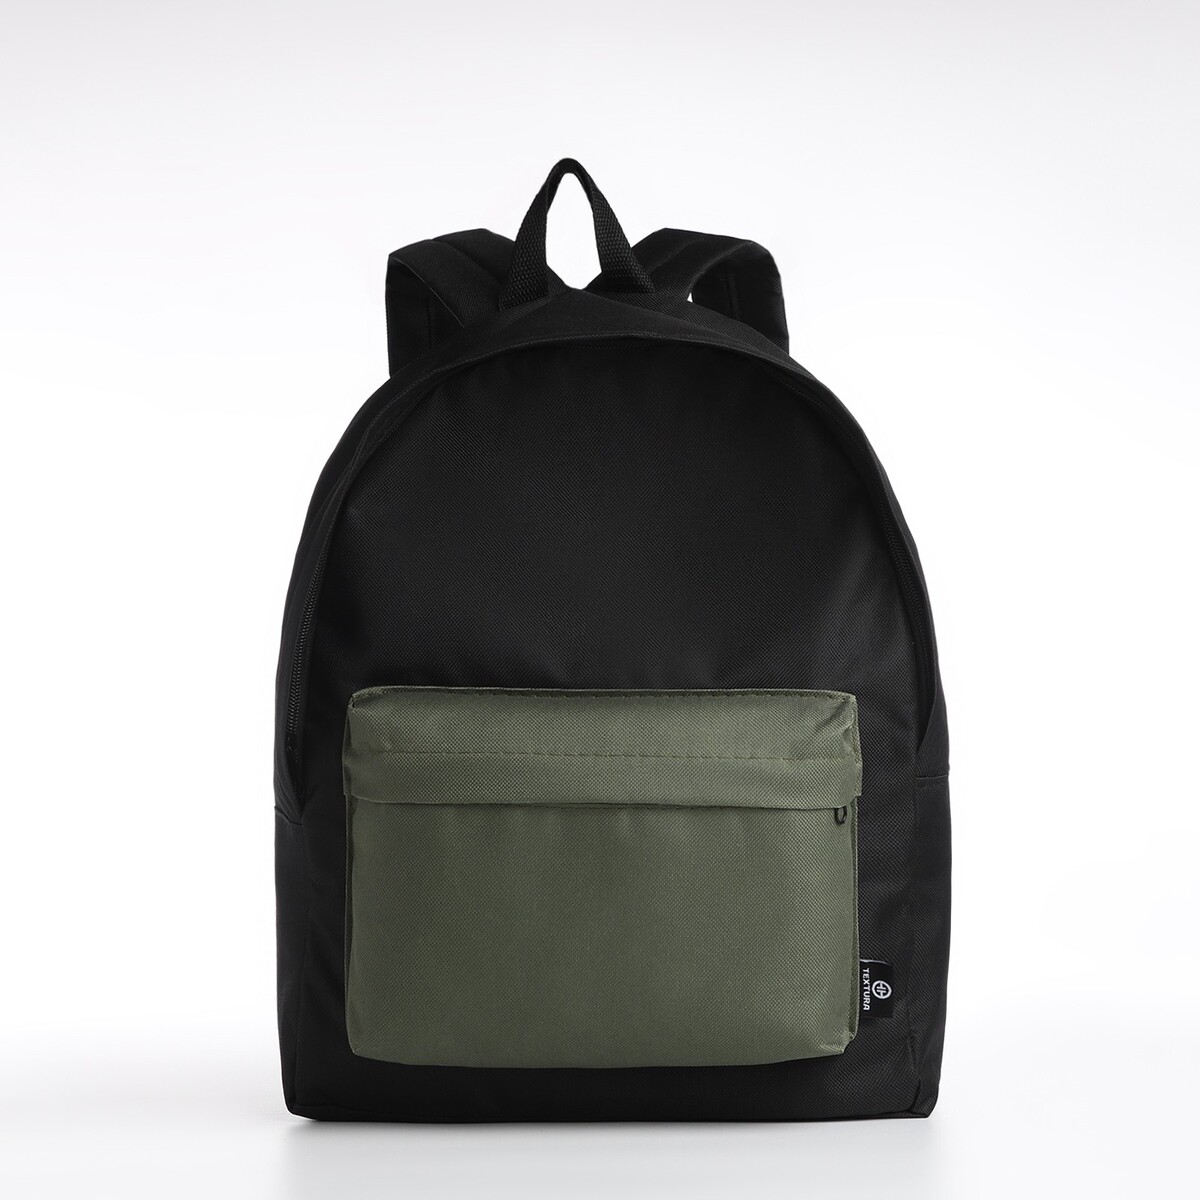 Спортивный рюкзак textura, 20 литров, цвет черный/хаки